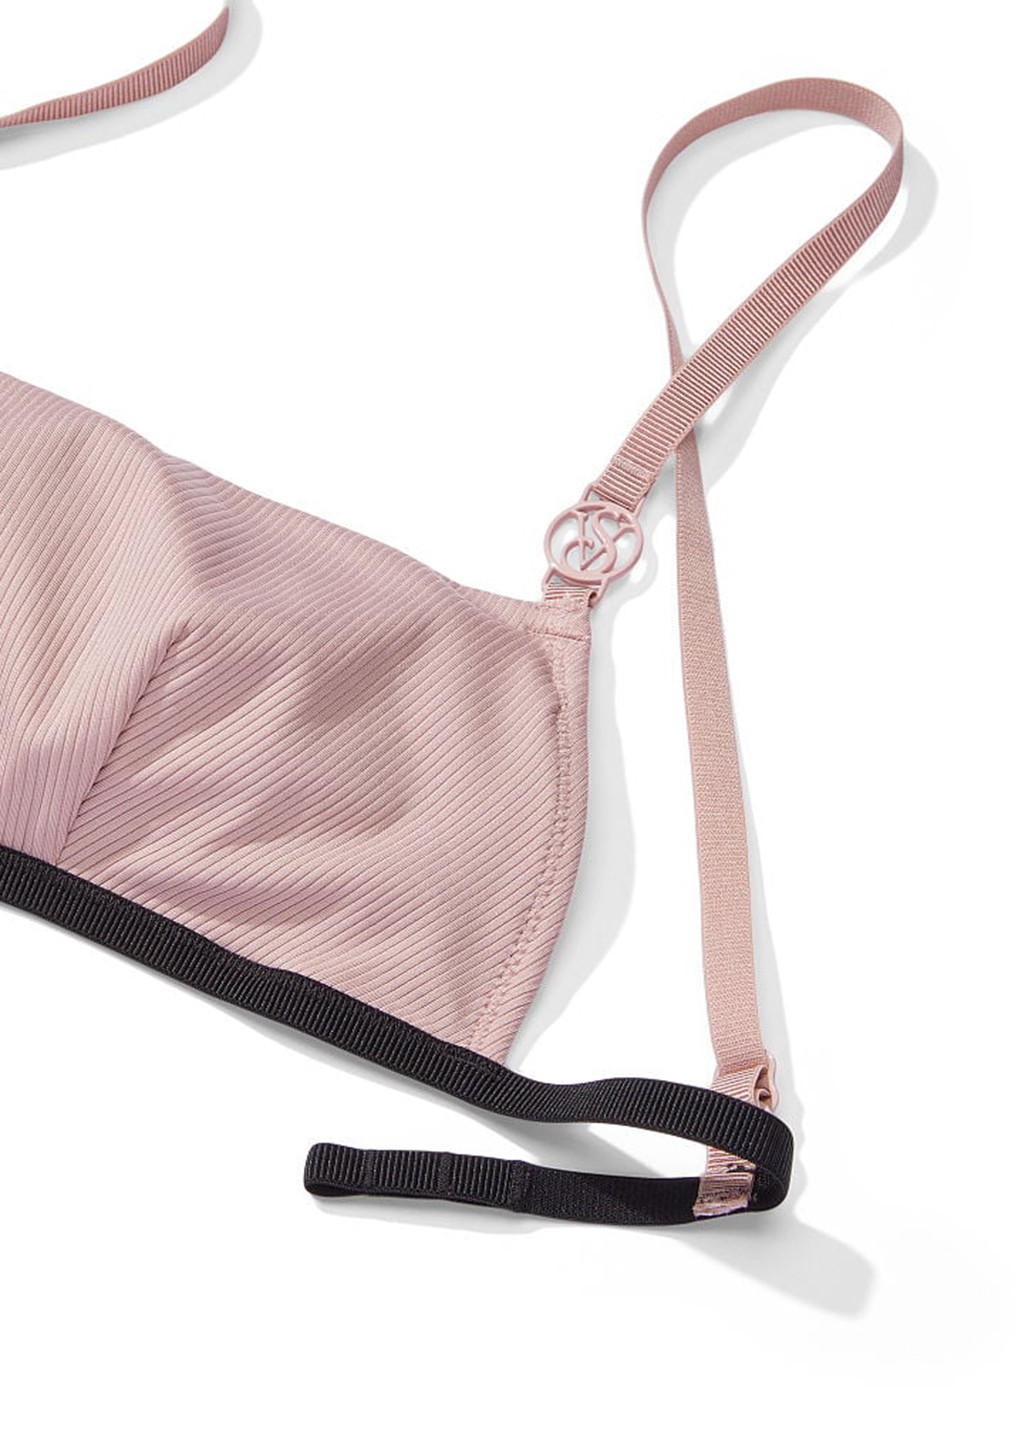 Светло-розовый летний купальник (лиф, трусы) топ, раздельный Victoria's Secret